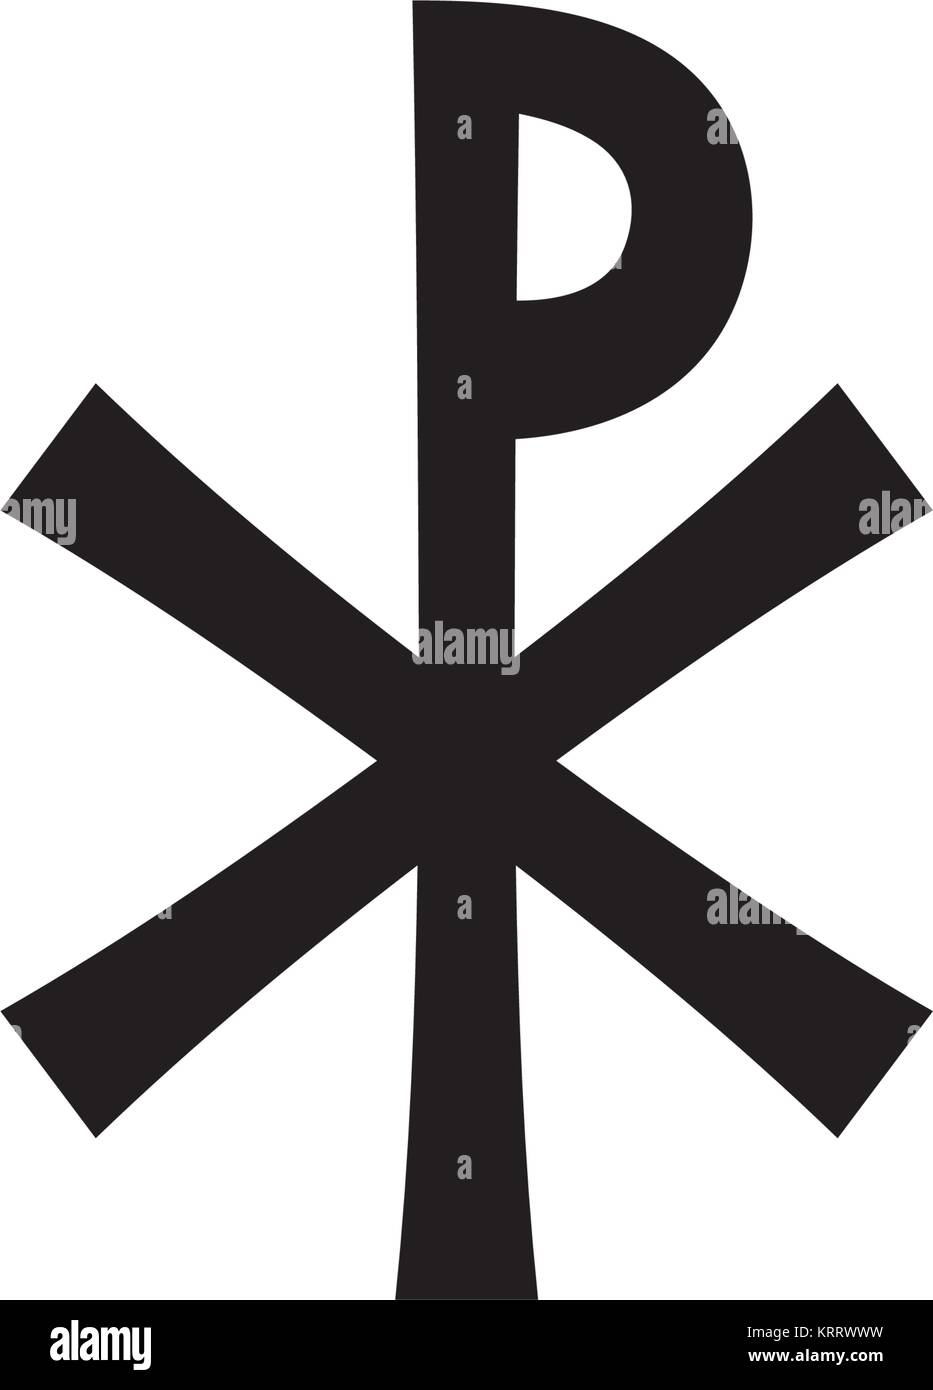 Christogram - Christliche Monogramm des Jesus Christus, der Retter, den Herrn, unseren Gott. (Mittelalterliches Monogramm). Stock Vektor